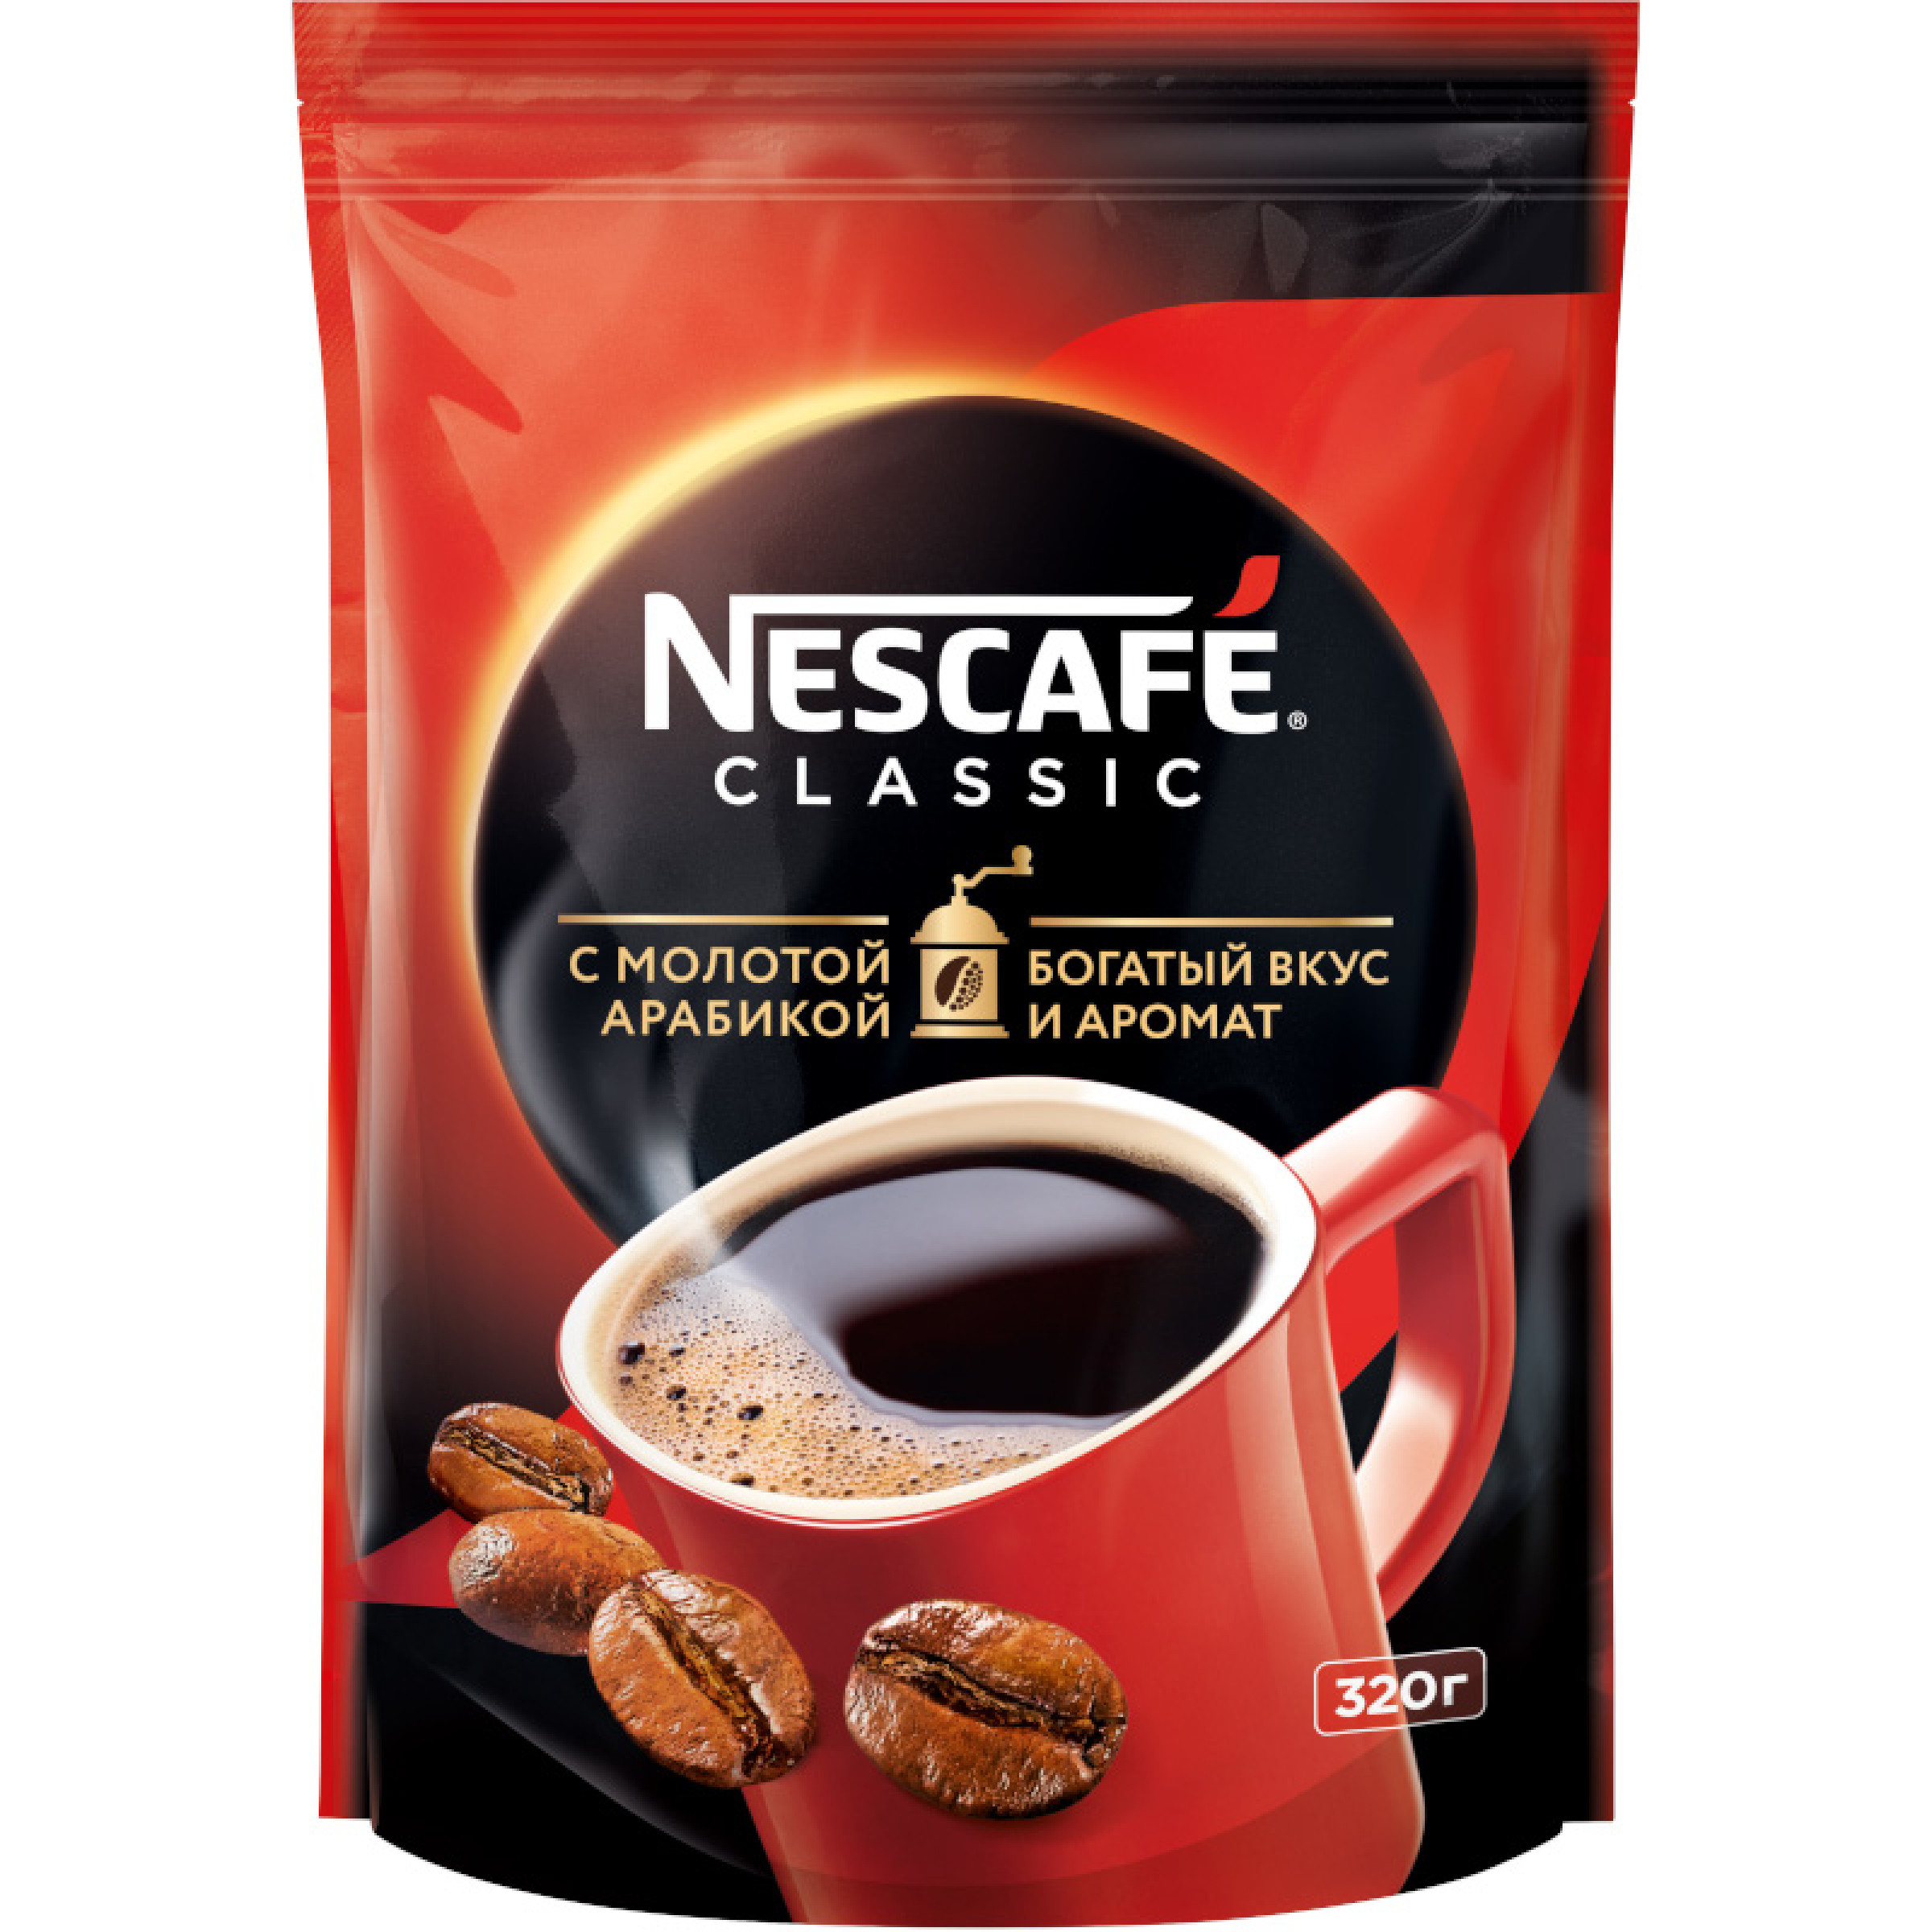 Кофе растворимый гранулированный Nescafe Classic, 320 г